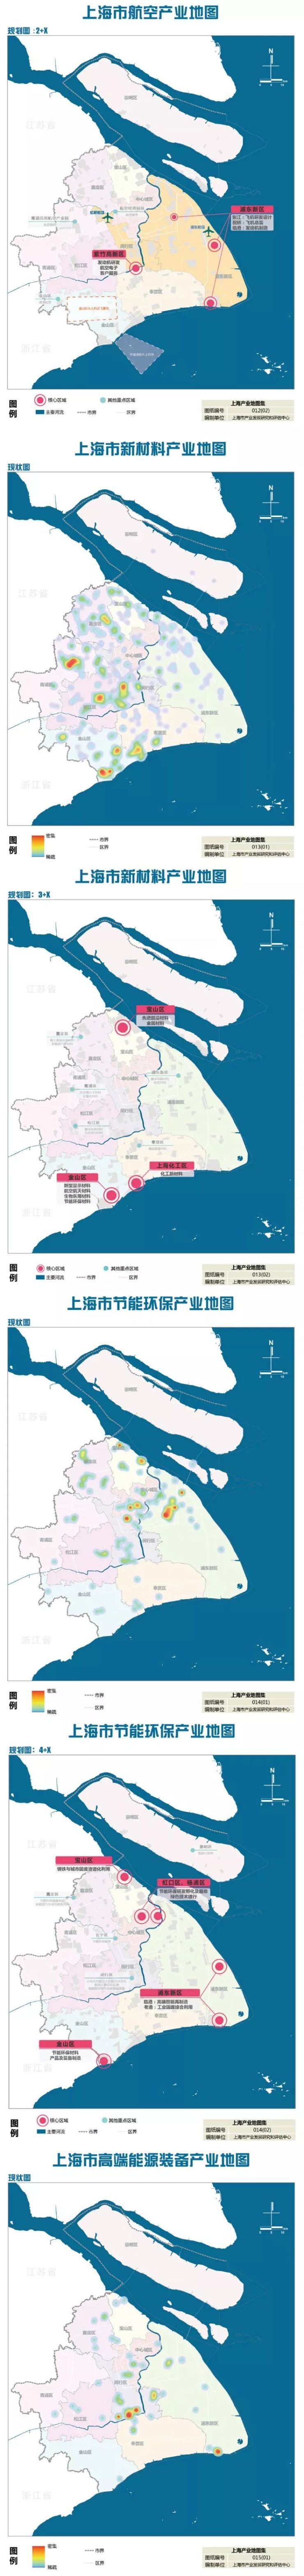 《上海市产业地图》正式出炉：未来产业发展的布局图、作战图(图6)